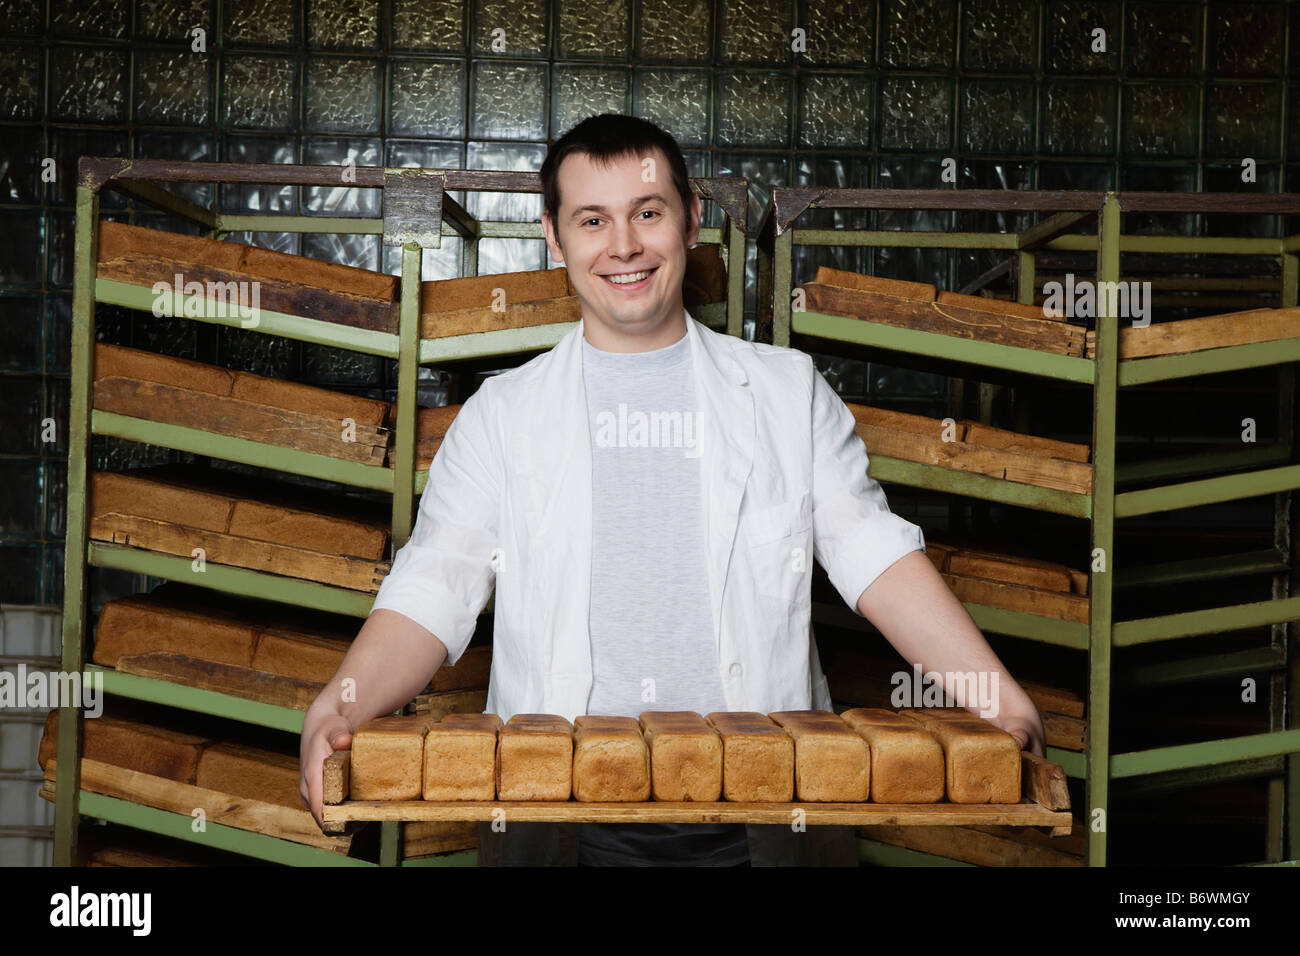 Baker llevando hogazas de pan fresco Foto de stock